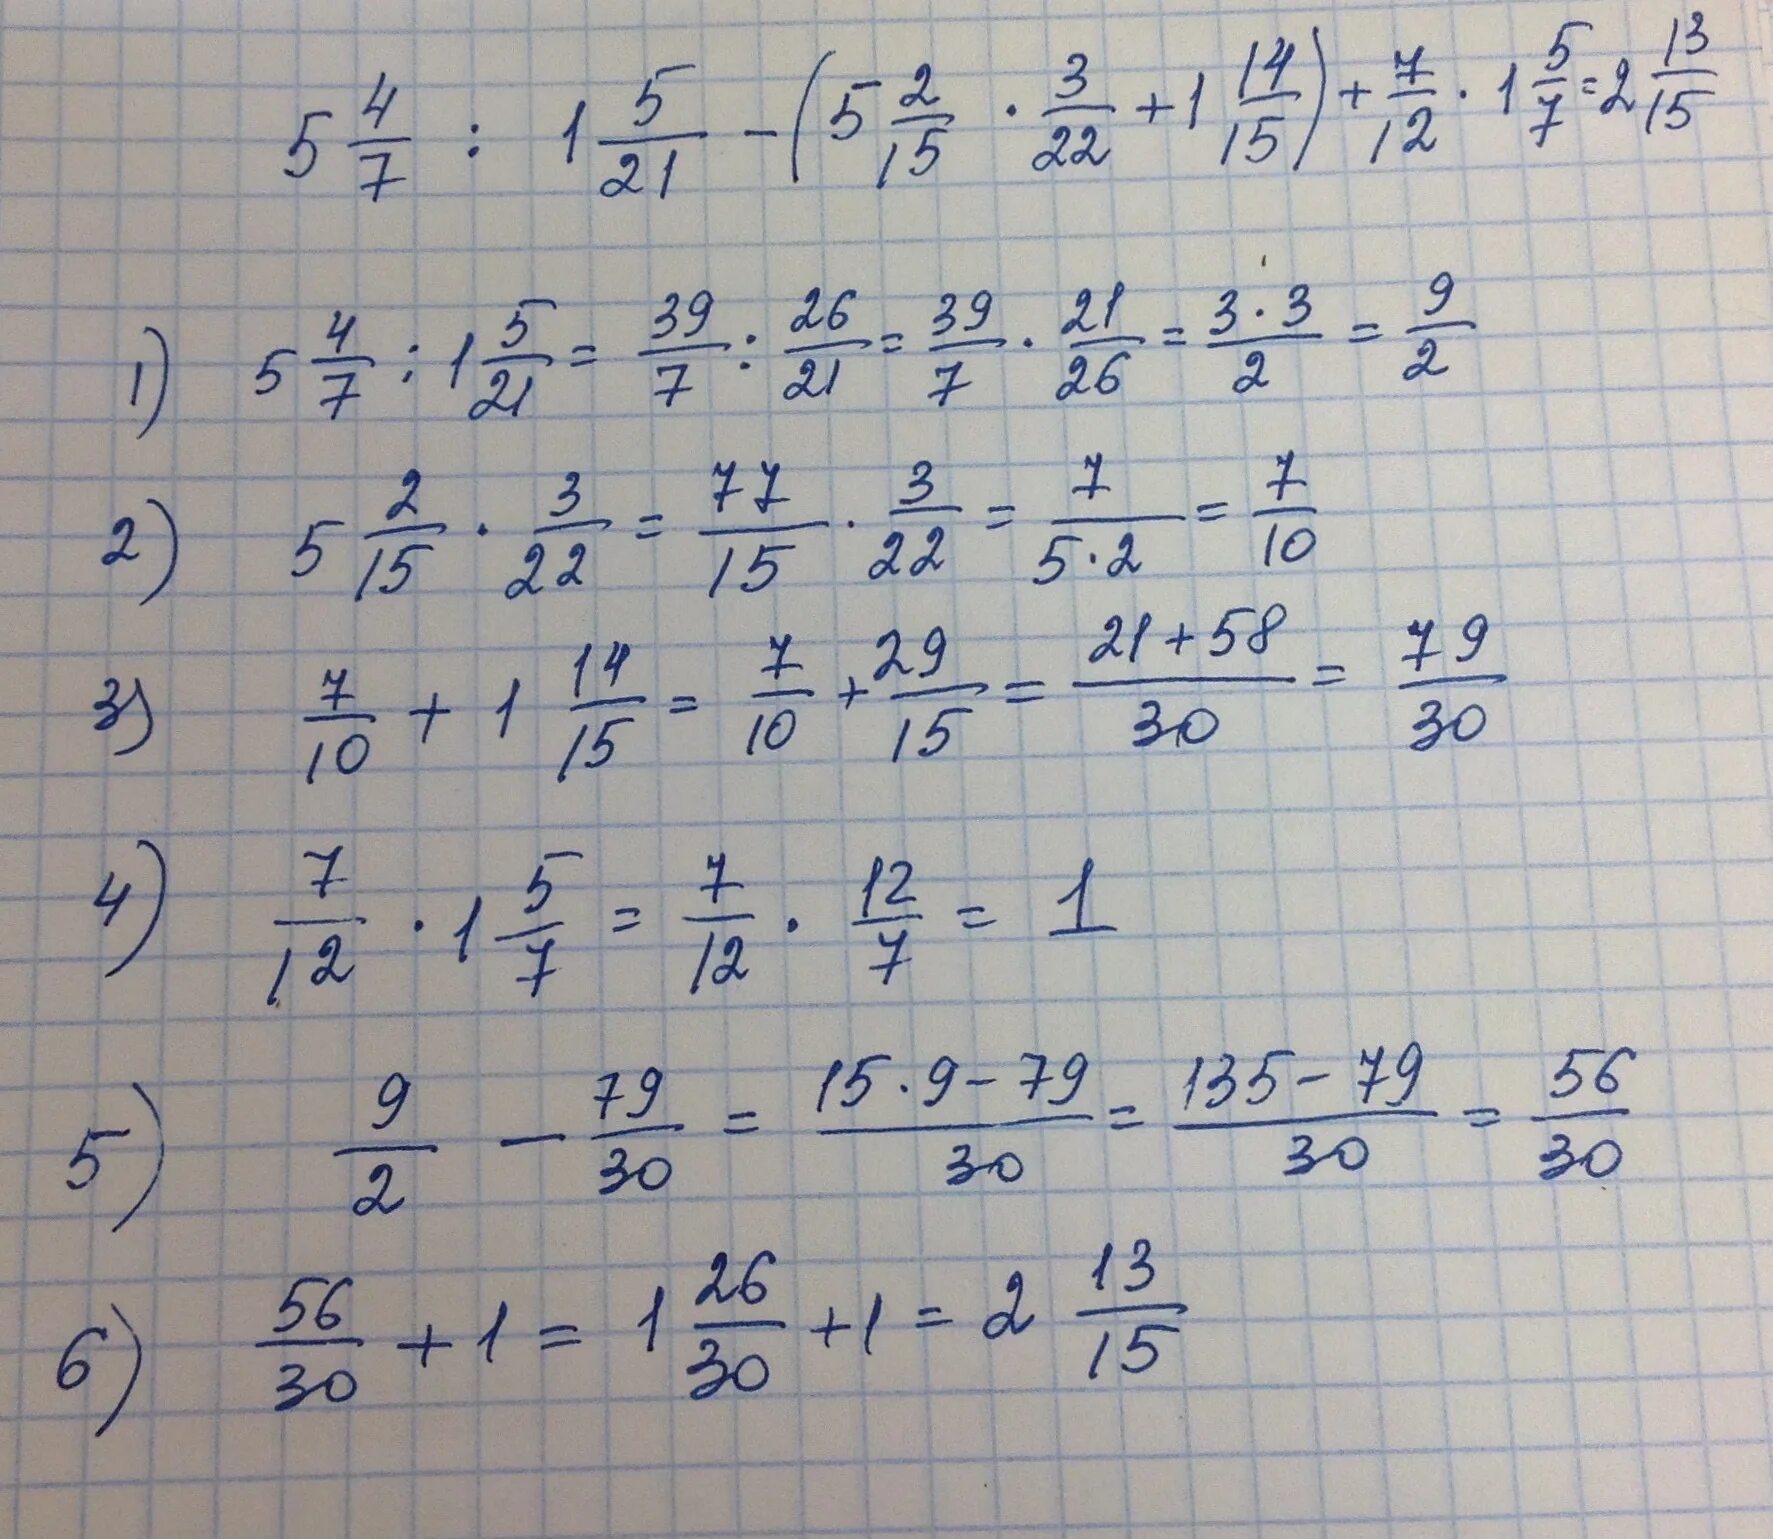 НВКУ 49-12-7. 5 × 12/15 +(5,6-11,2):1, 6/5. 5 1/3×2 1/4÷7 1/5 ответ. (5/6+2 3/4):4 7/9*2 2/3-1 2/3. 11 15 3 5 решение